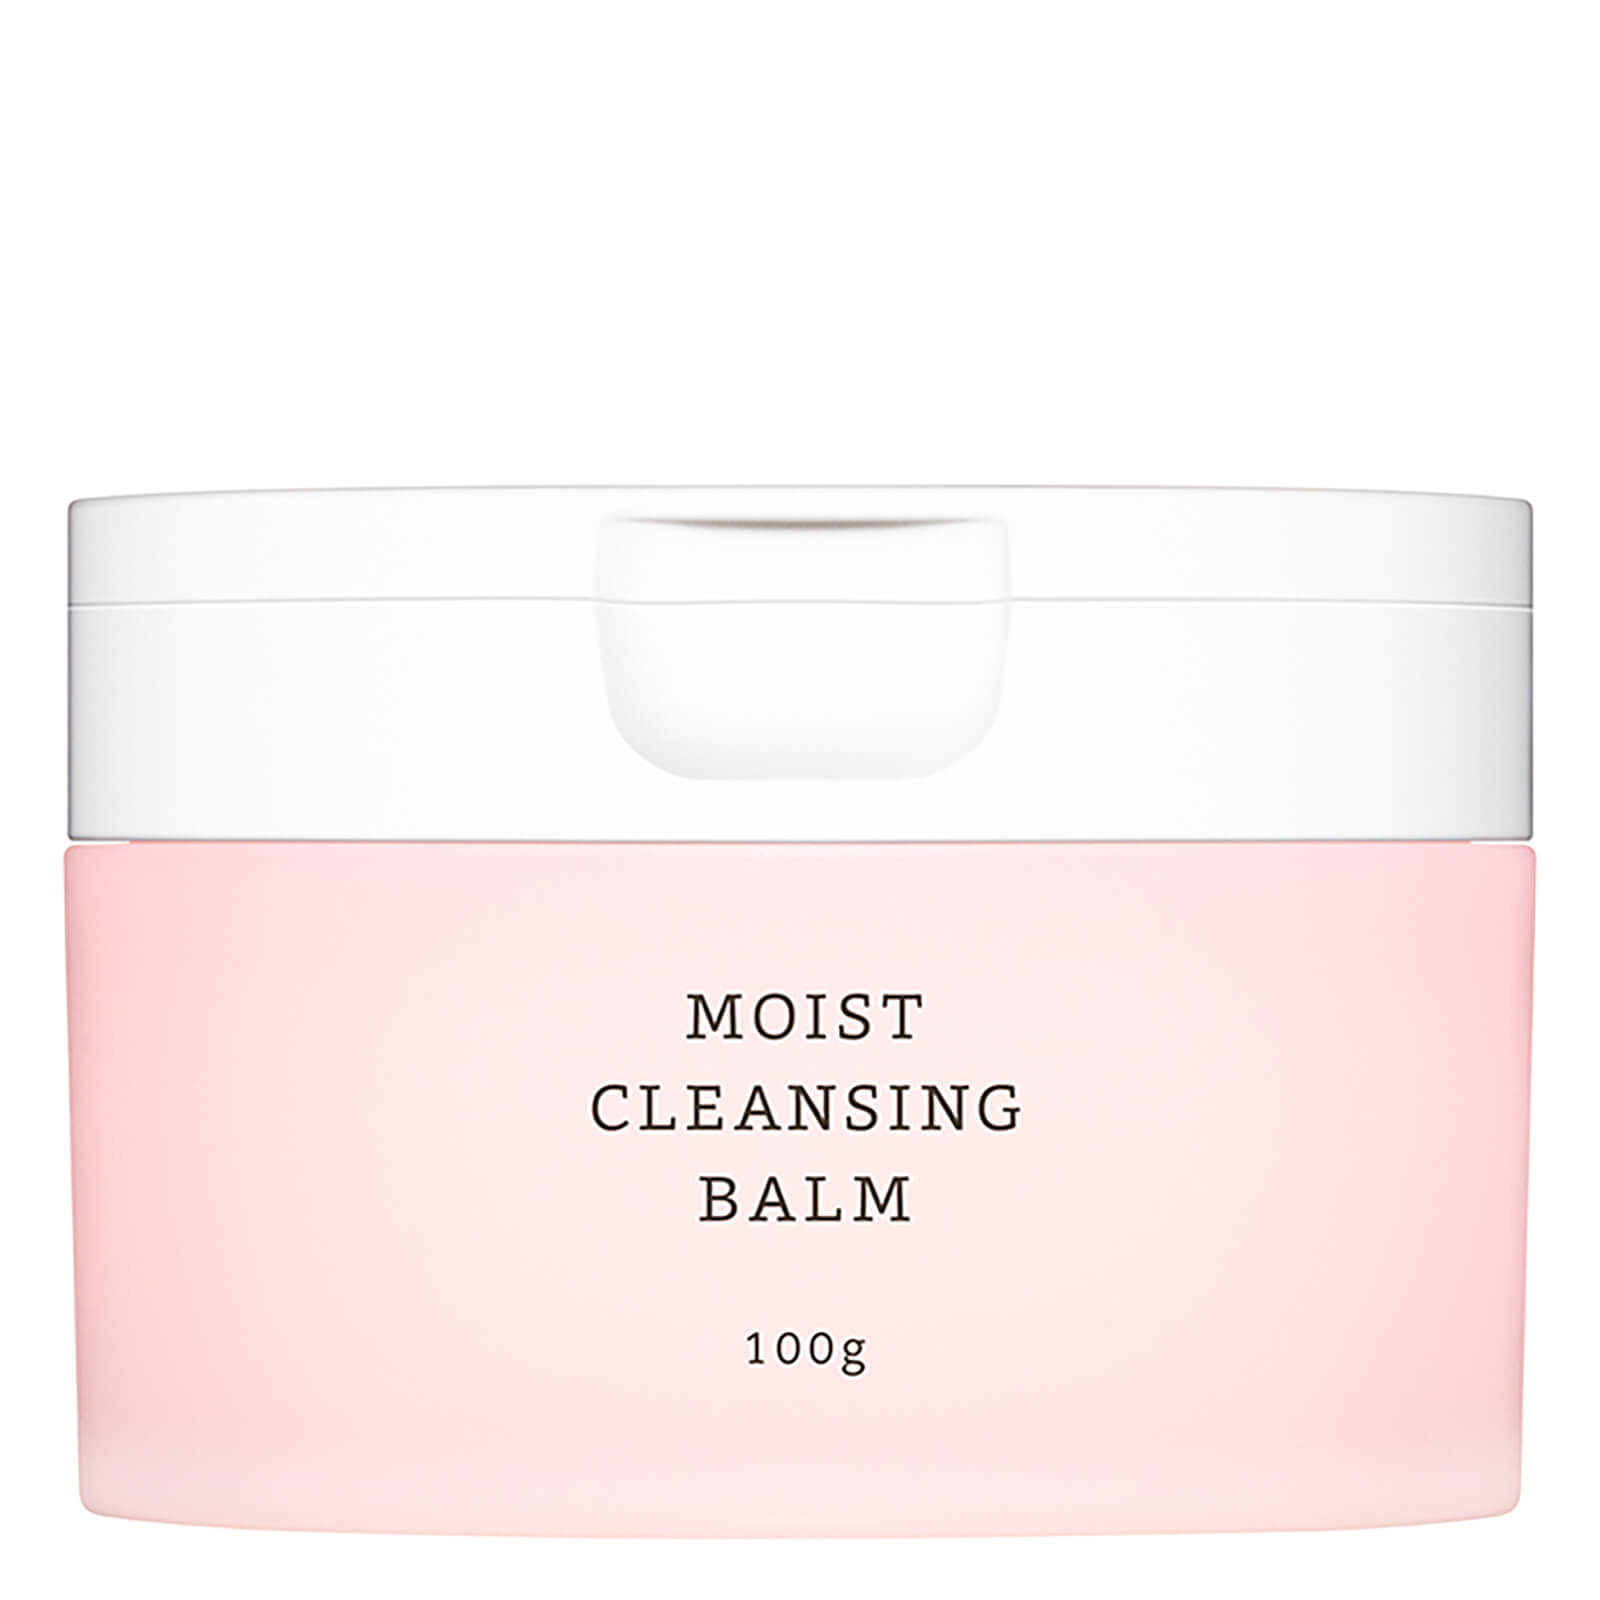 RMK Moist Cleansing Balm (100g)